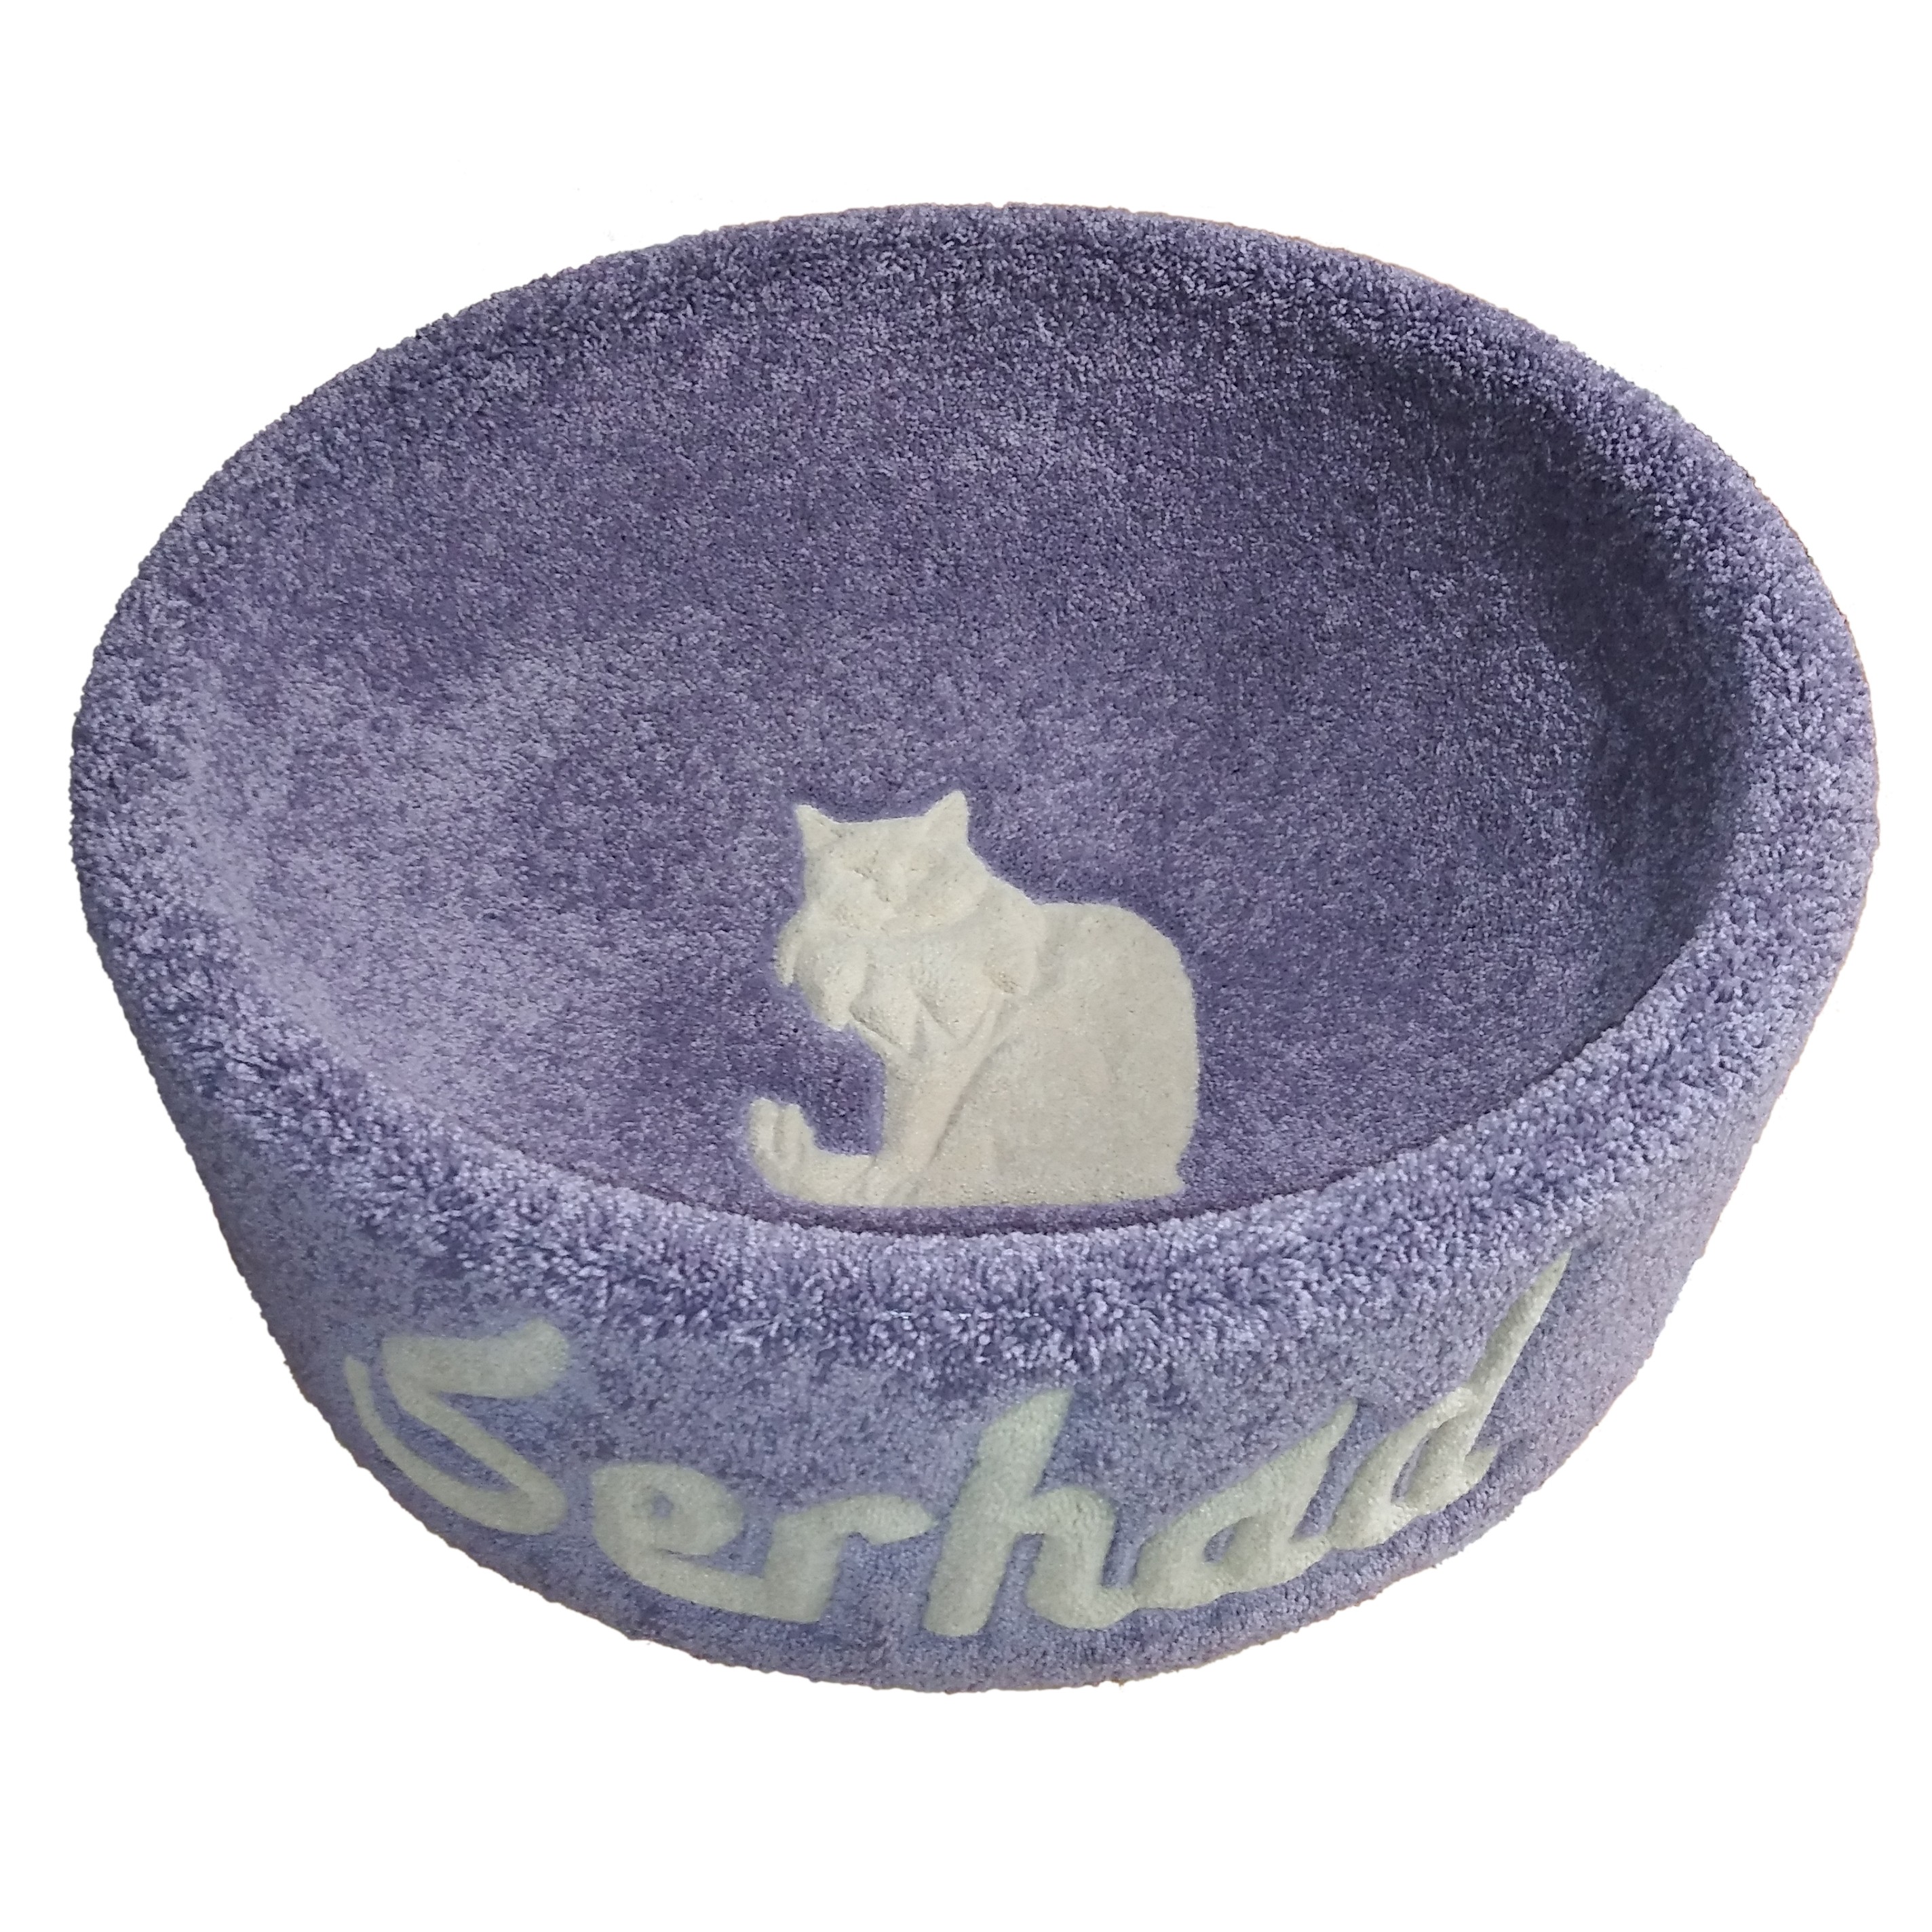 Jumbo Kitty Bowl Cat Bed